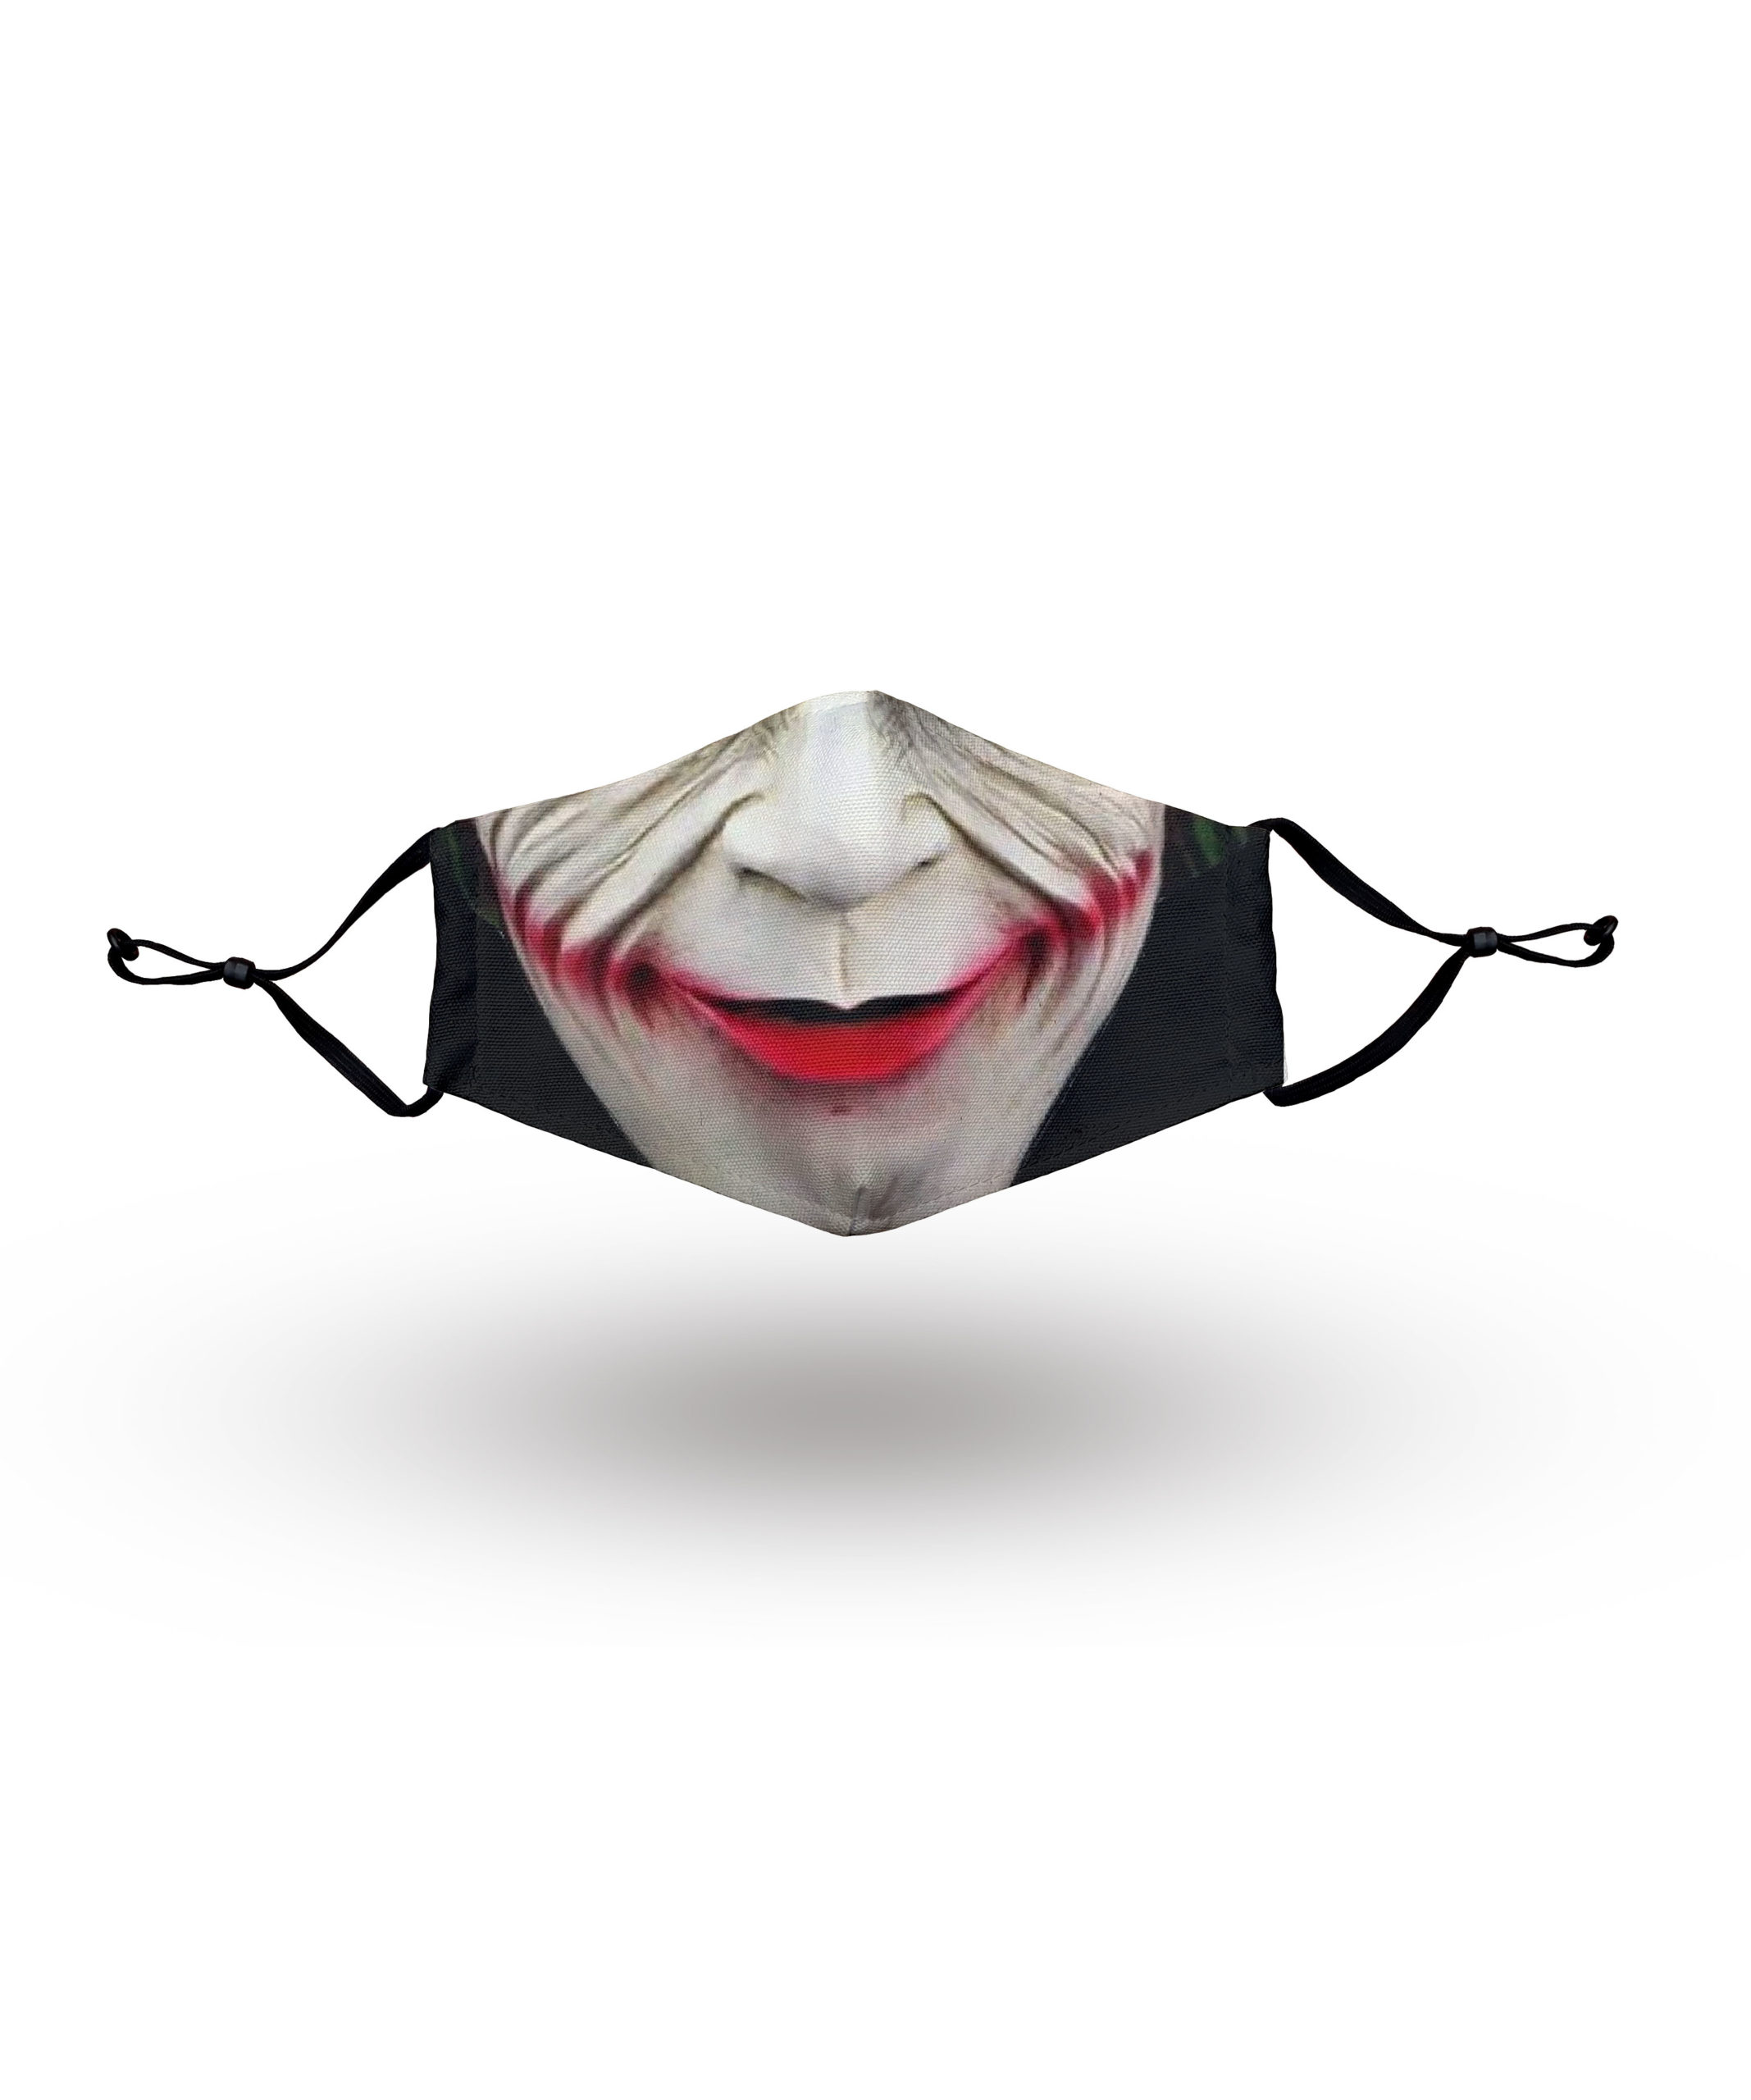 Joker Face Mask